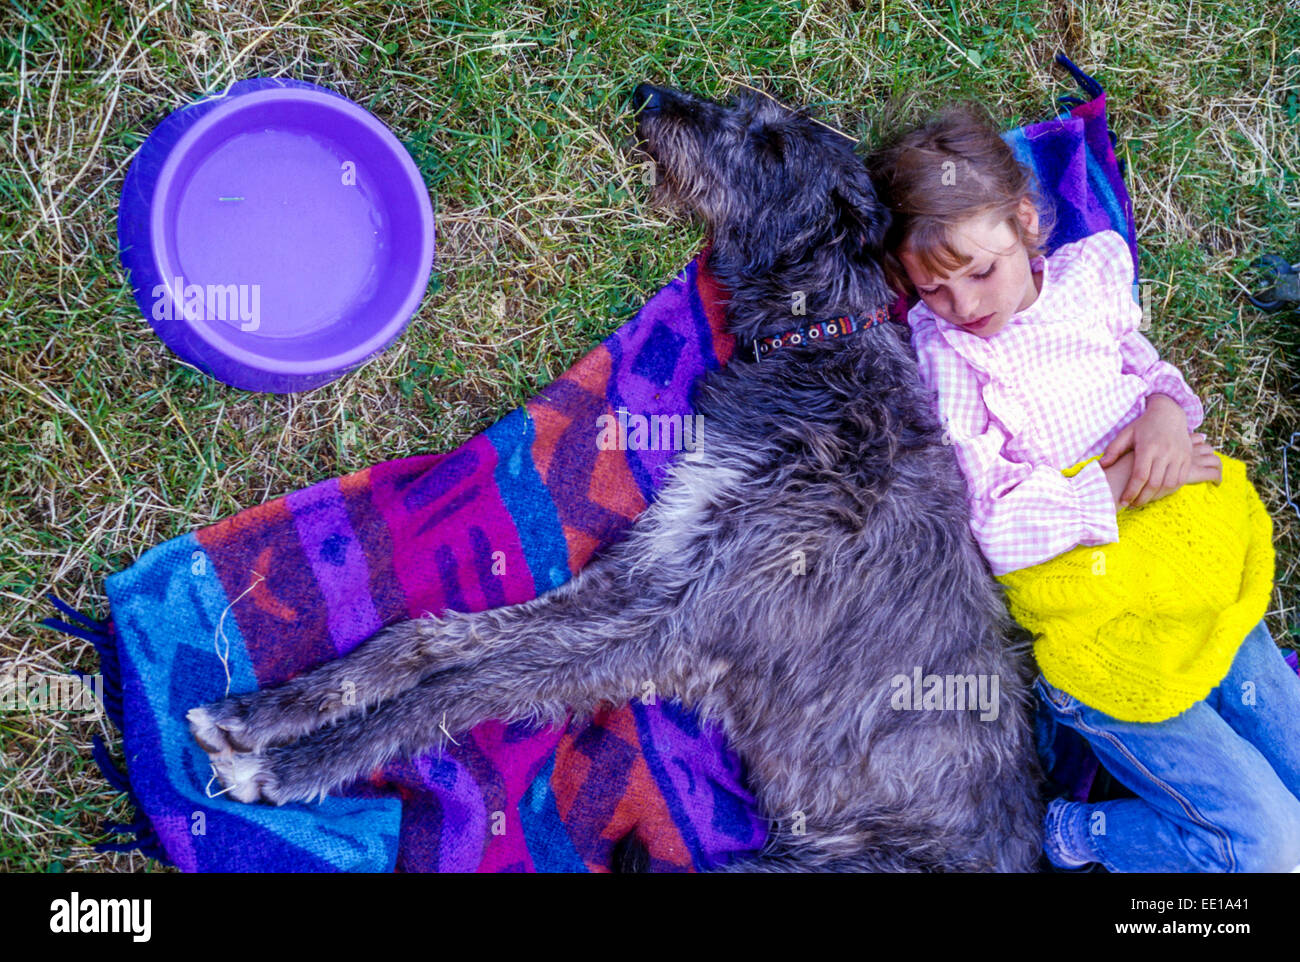 Irish Wolfhound dog and child sleeping on a blanket Stock Photo